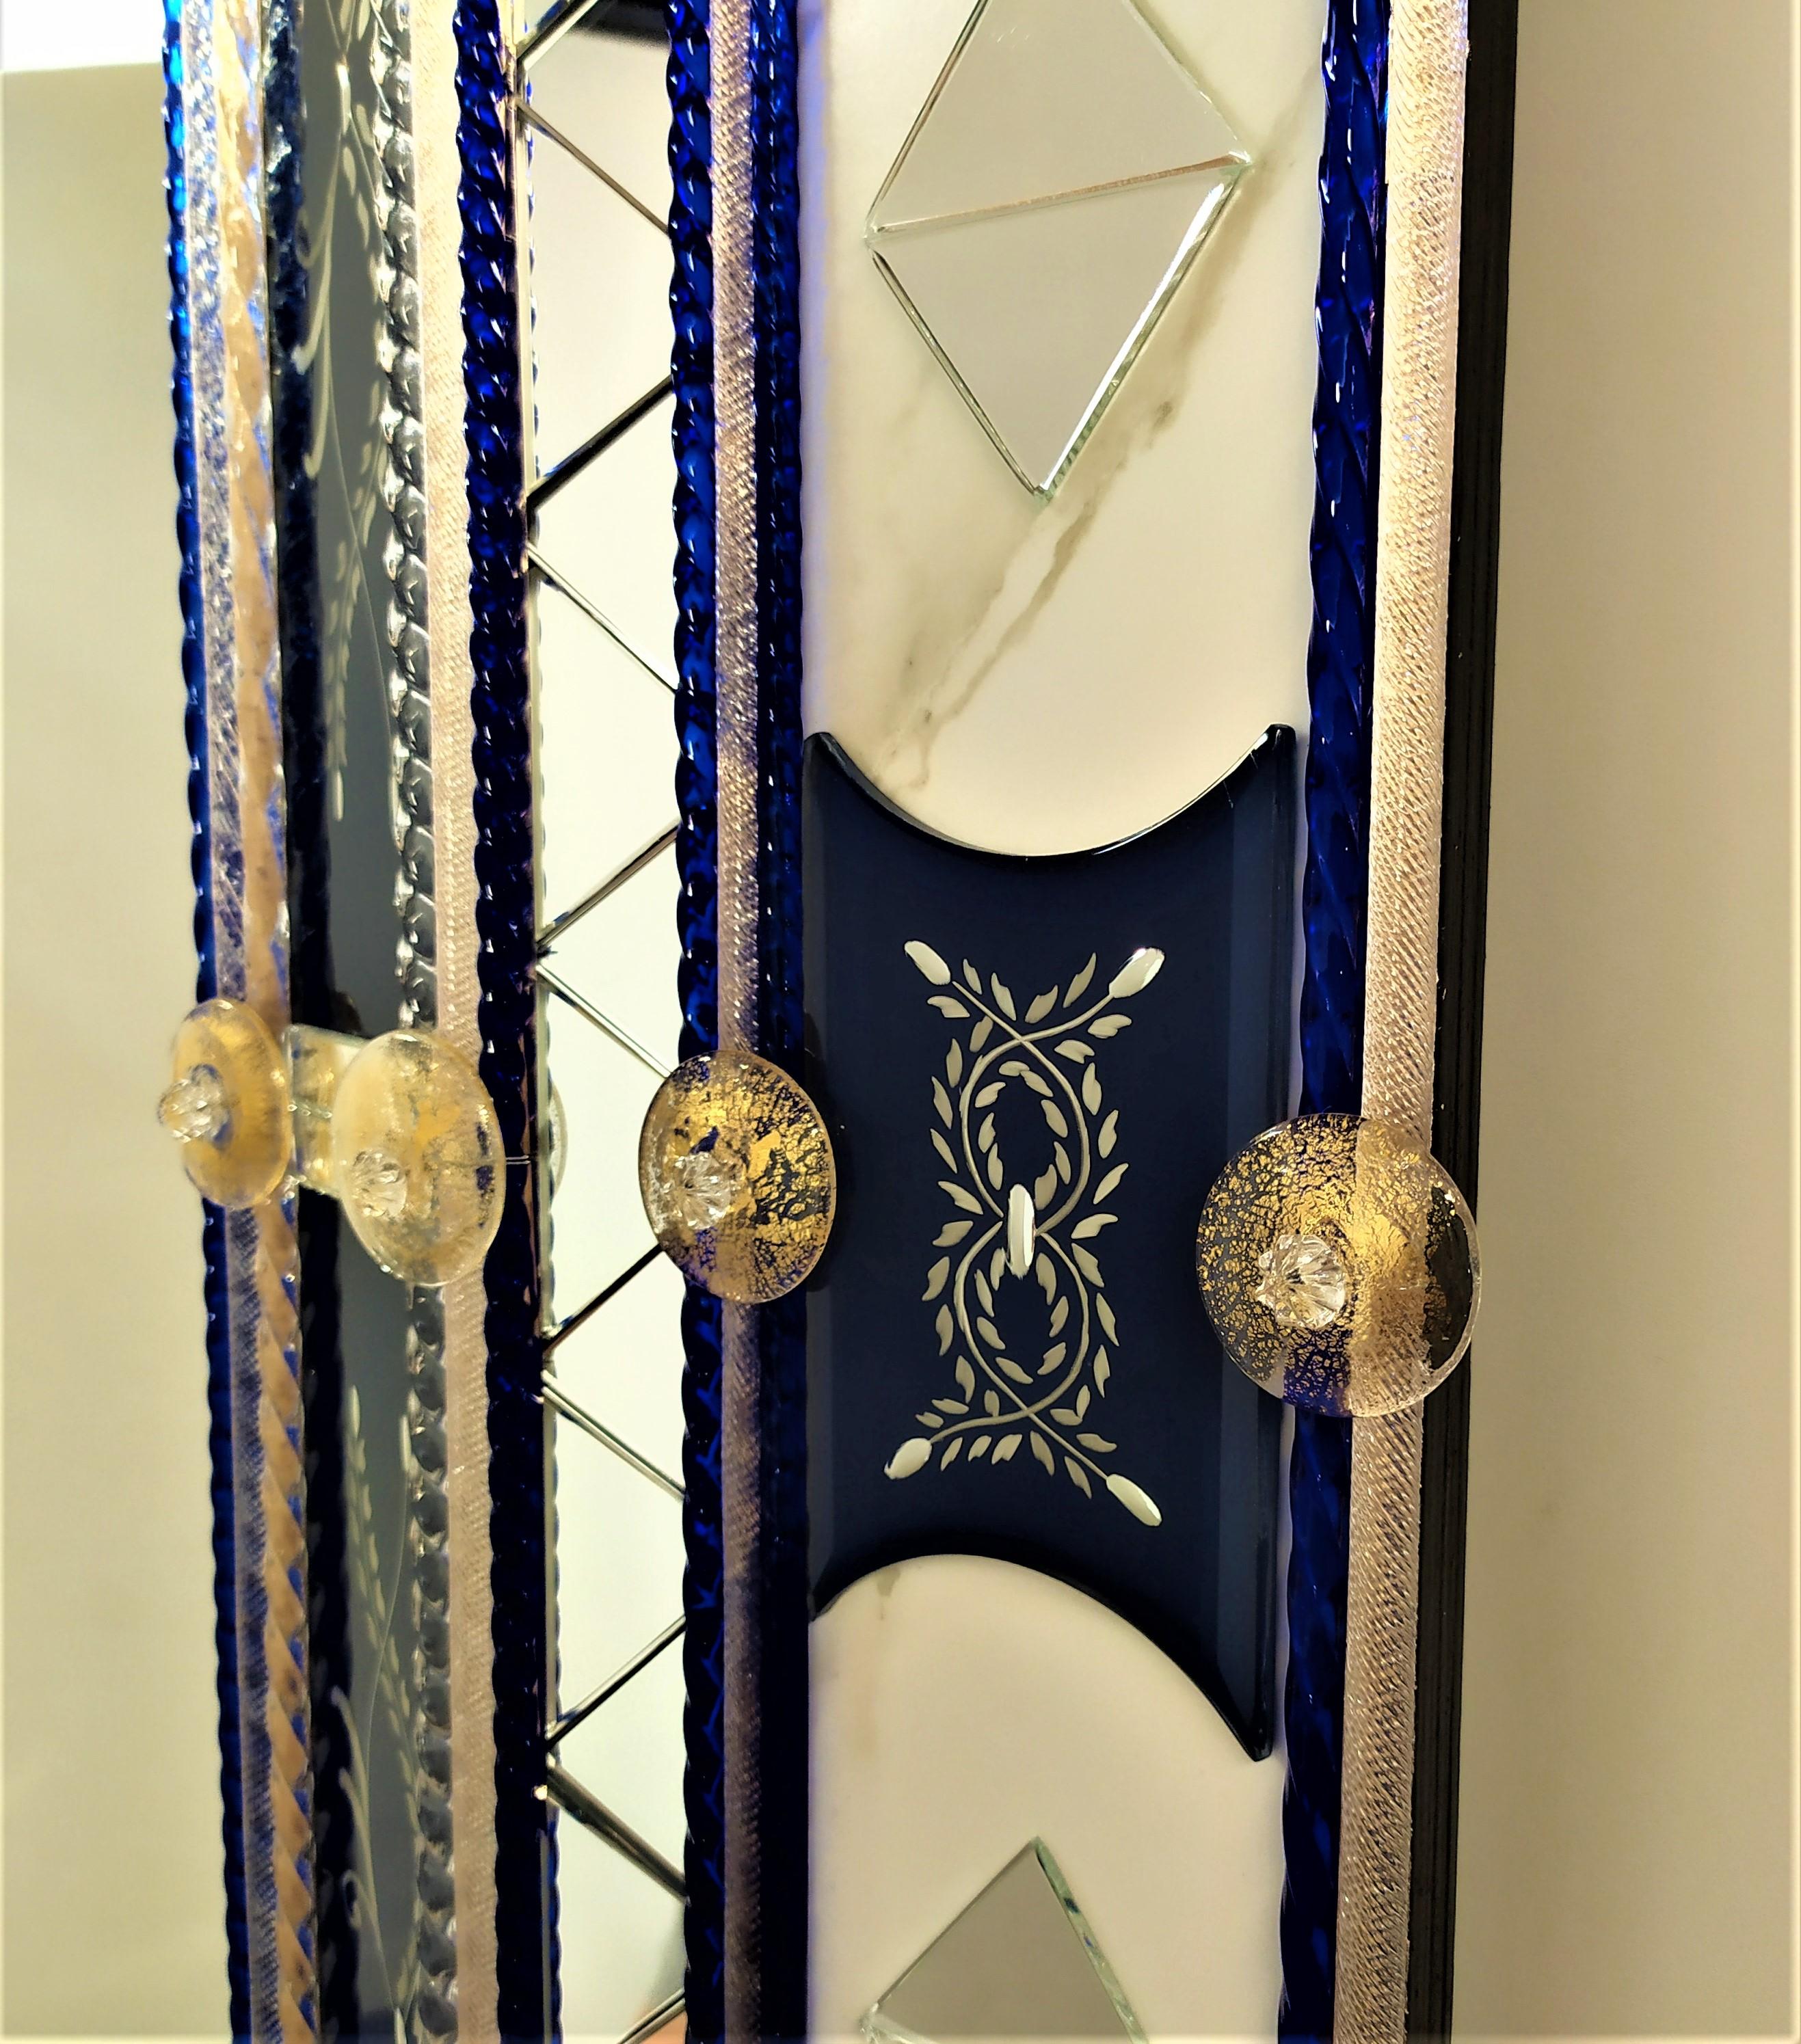 Miroir en verre de Murano, avec bandes et pièces biseautées gravées, argenté avec de l'argent pur de couleur bleue, avec insertion de détails en miroir transparent en forme de triangle, baguettes en verre de Murano en cristal et Madone de couleur